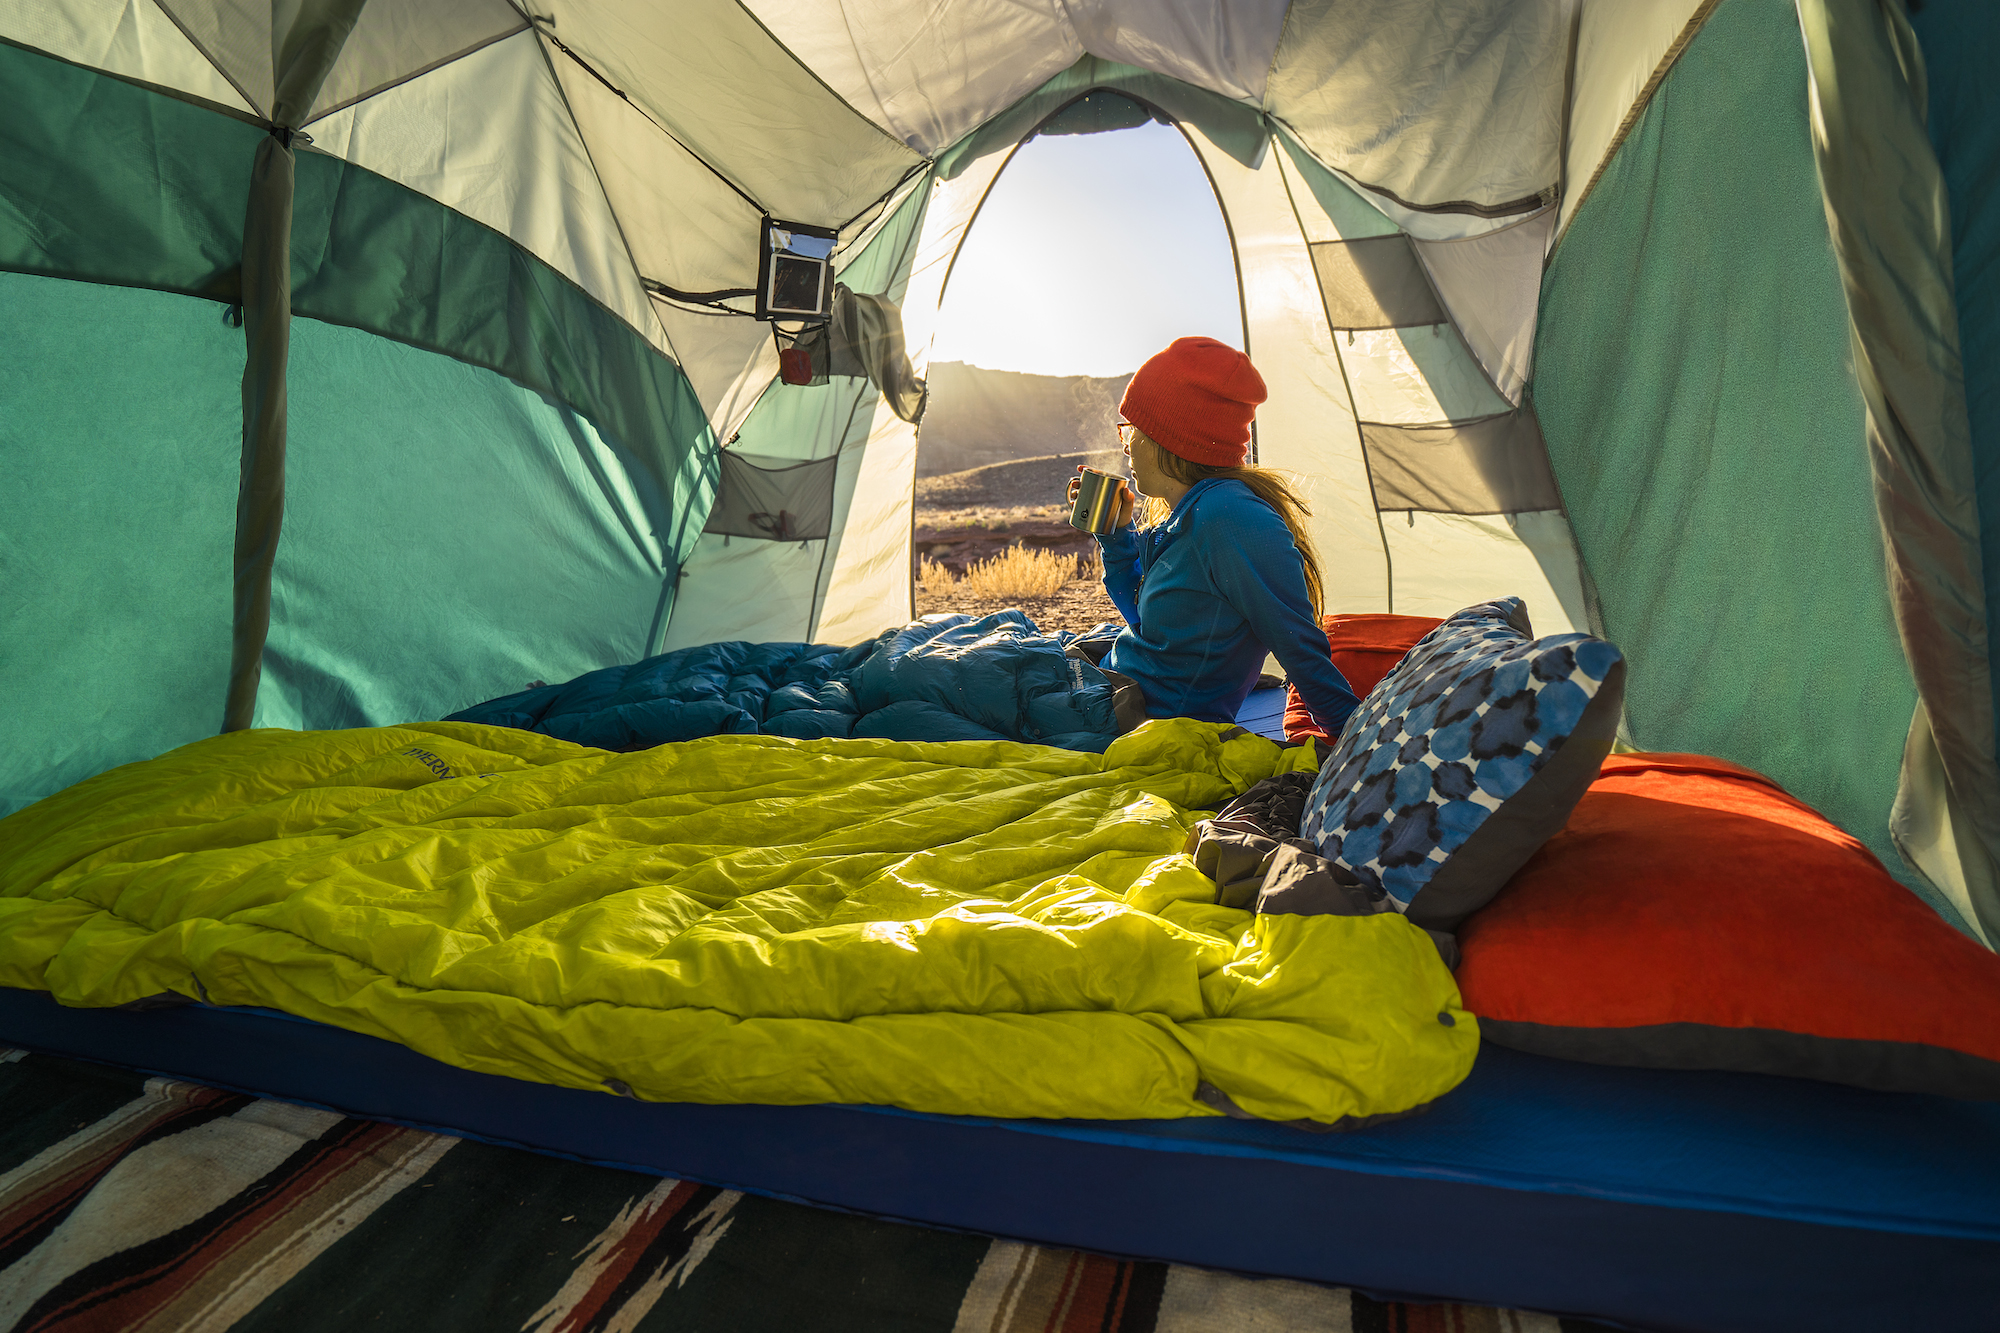 Спальный мешок camping. Спать в палатке. Поход с палатками. Ночевка в палатке. Спальное место в палатке.